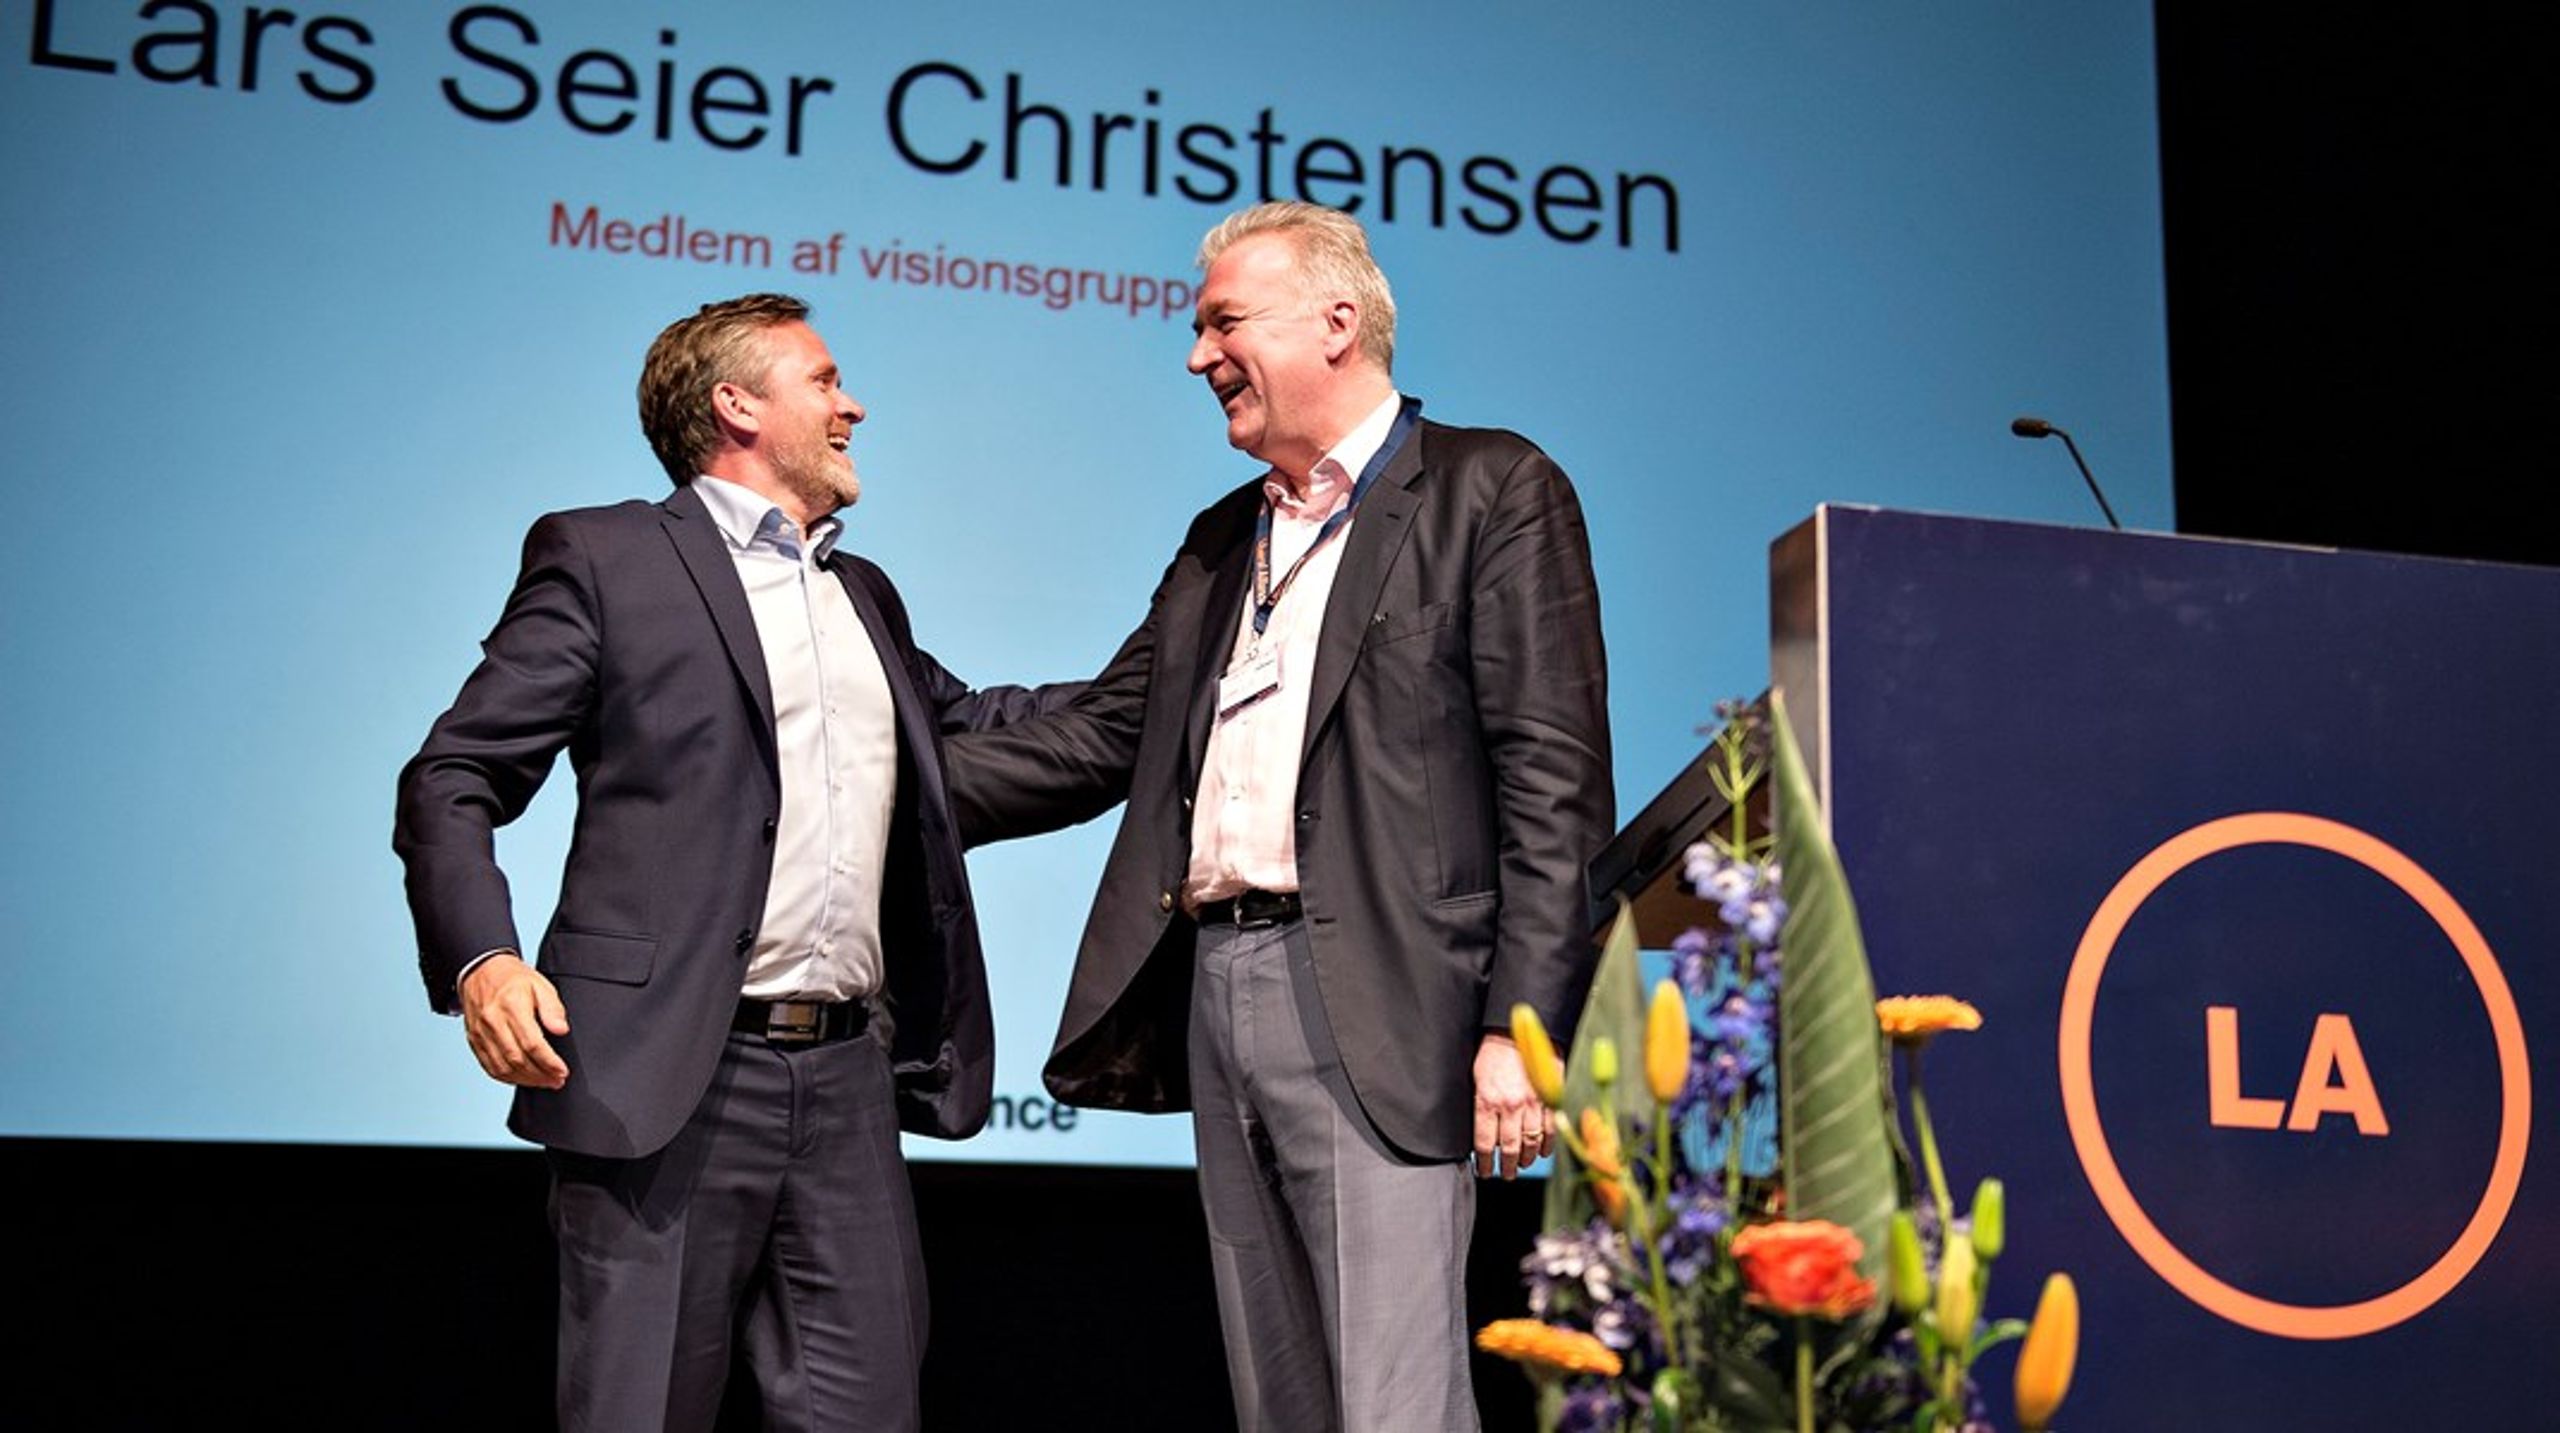 Det er for nylig blevet afsløret, hvordan Lars Seier Christensen har "bestilt" politiske tjenester til gengæld for millionstøtte til Liberal Alliance. Nu skal der gøres op med den hemmelige støtte, skriver Pelle Dragsted.